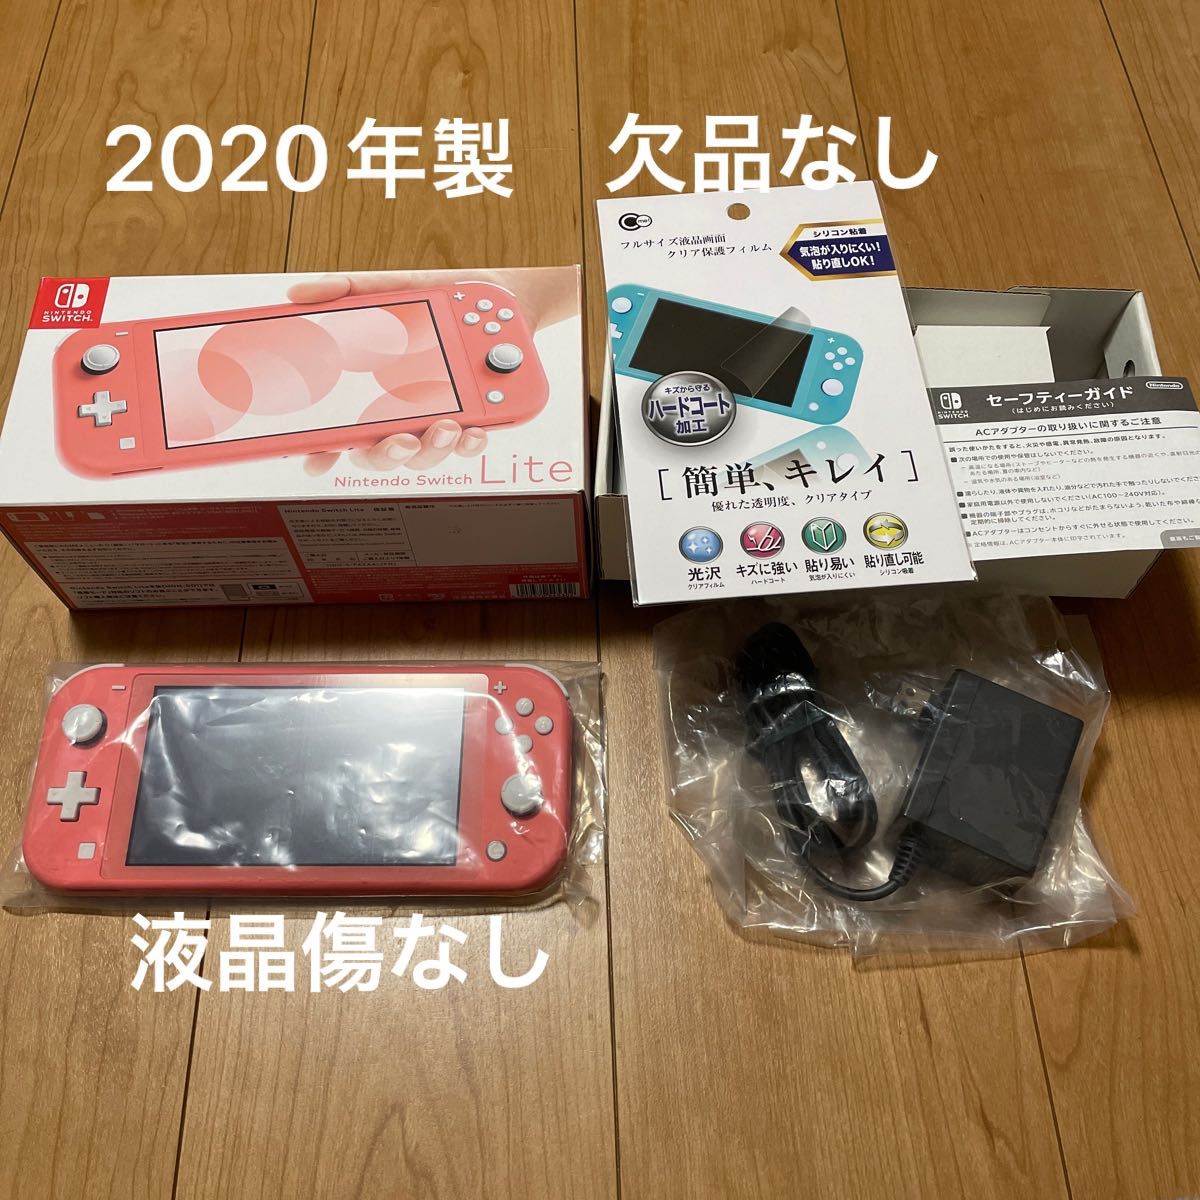 1291【2020年製】Nintendo Switch light コーラル 欠品なし テレビ 